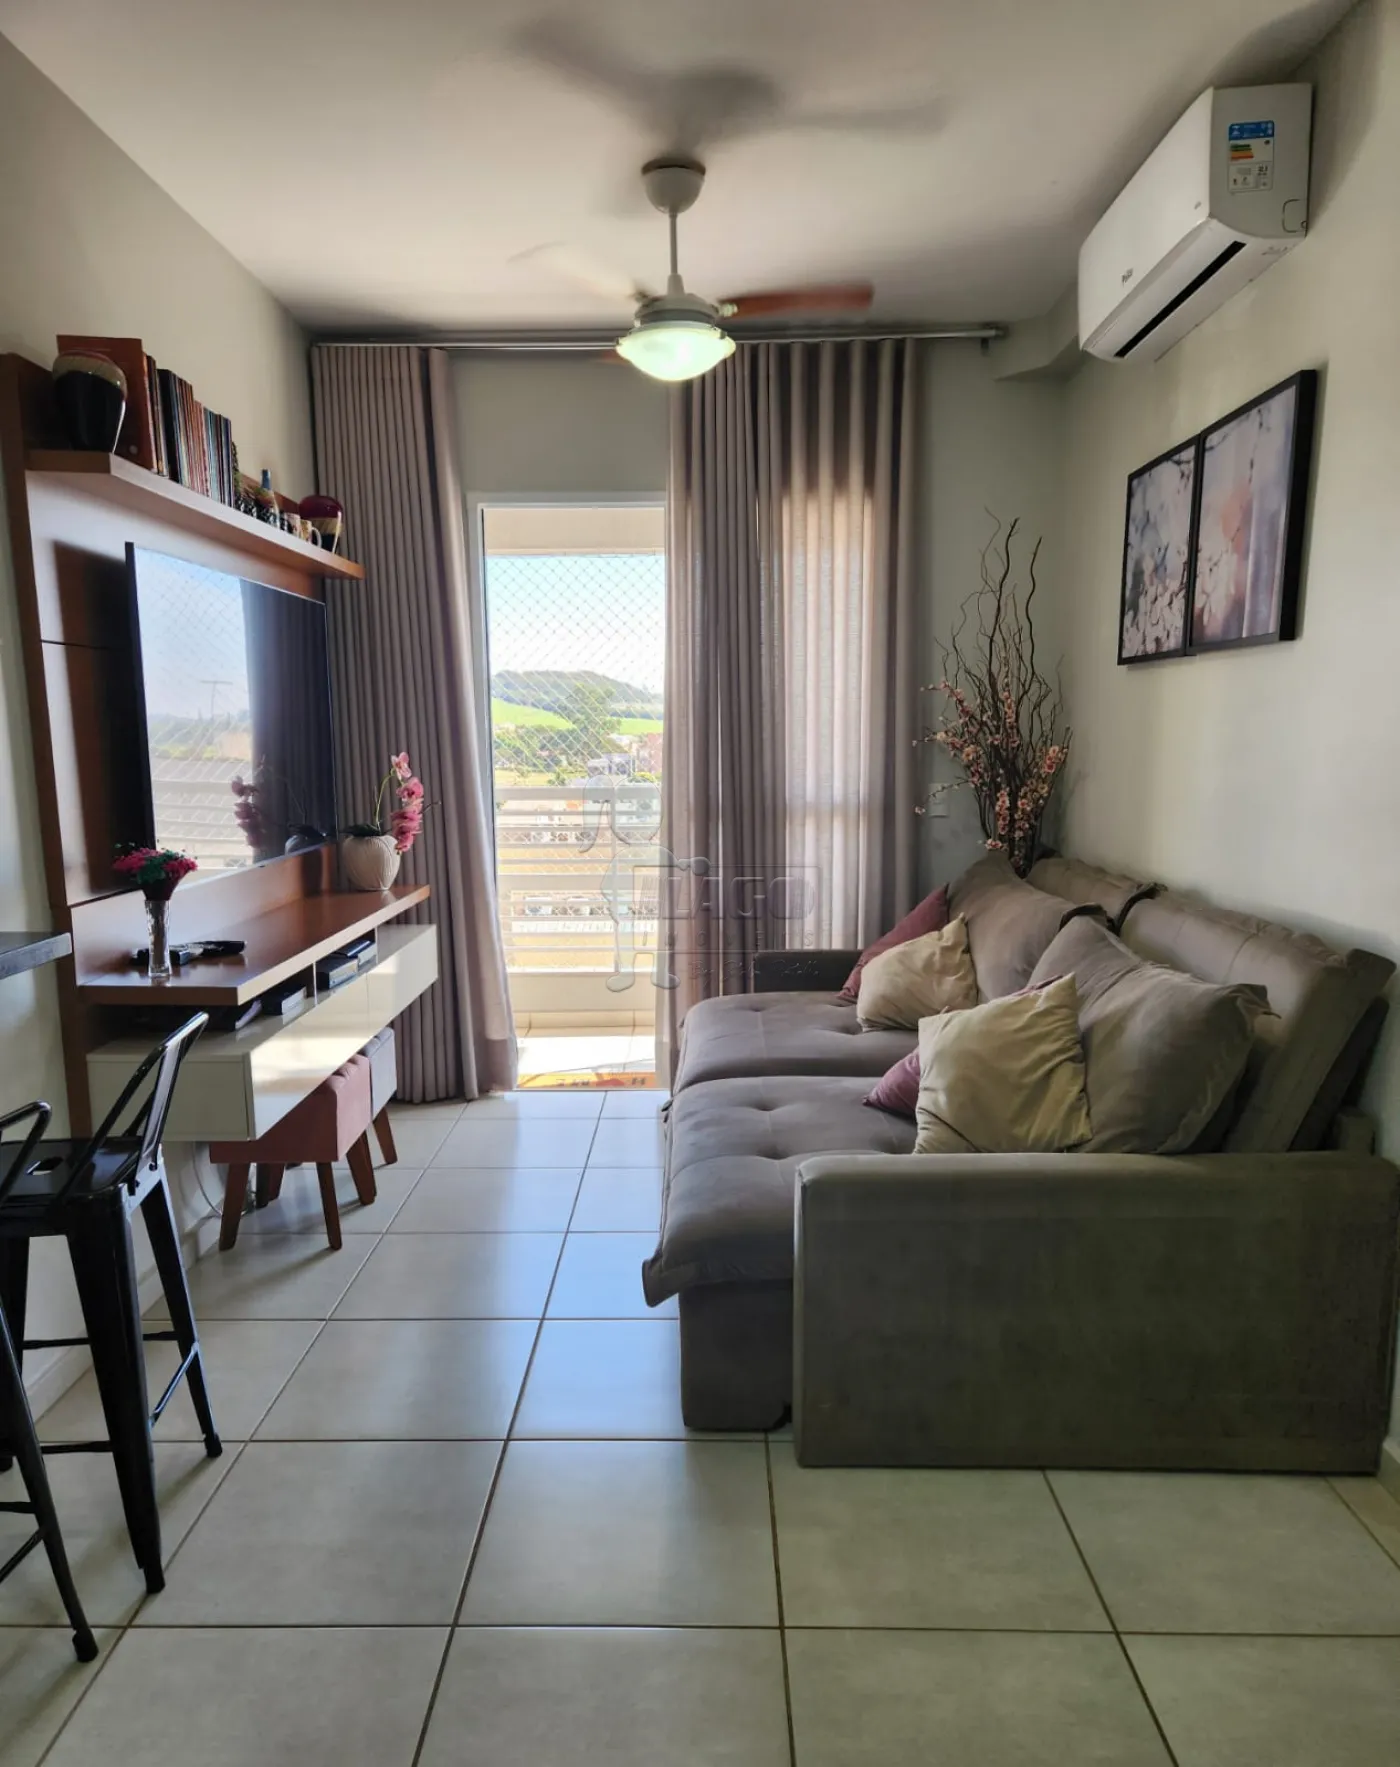 Comprar Apartamentos / Padrão em Ribeirão Preto R$ 360.000,00 - Foto 6